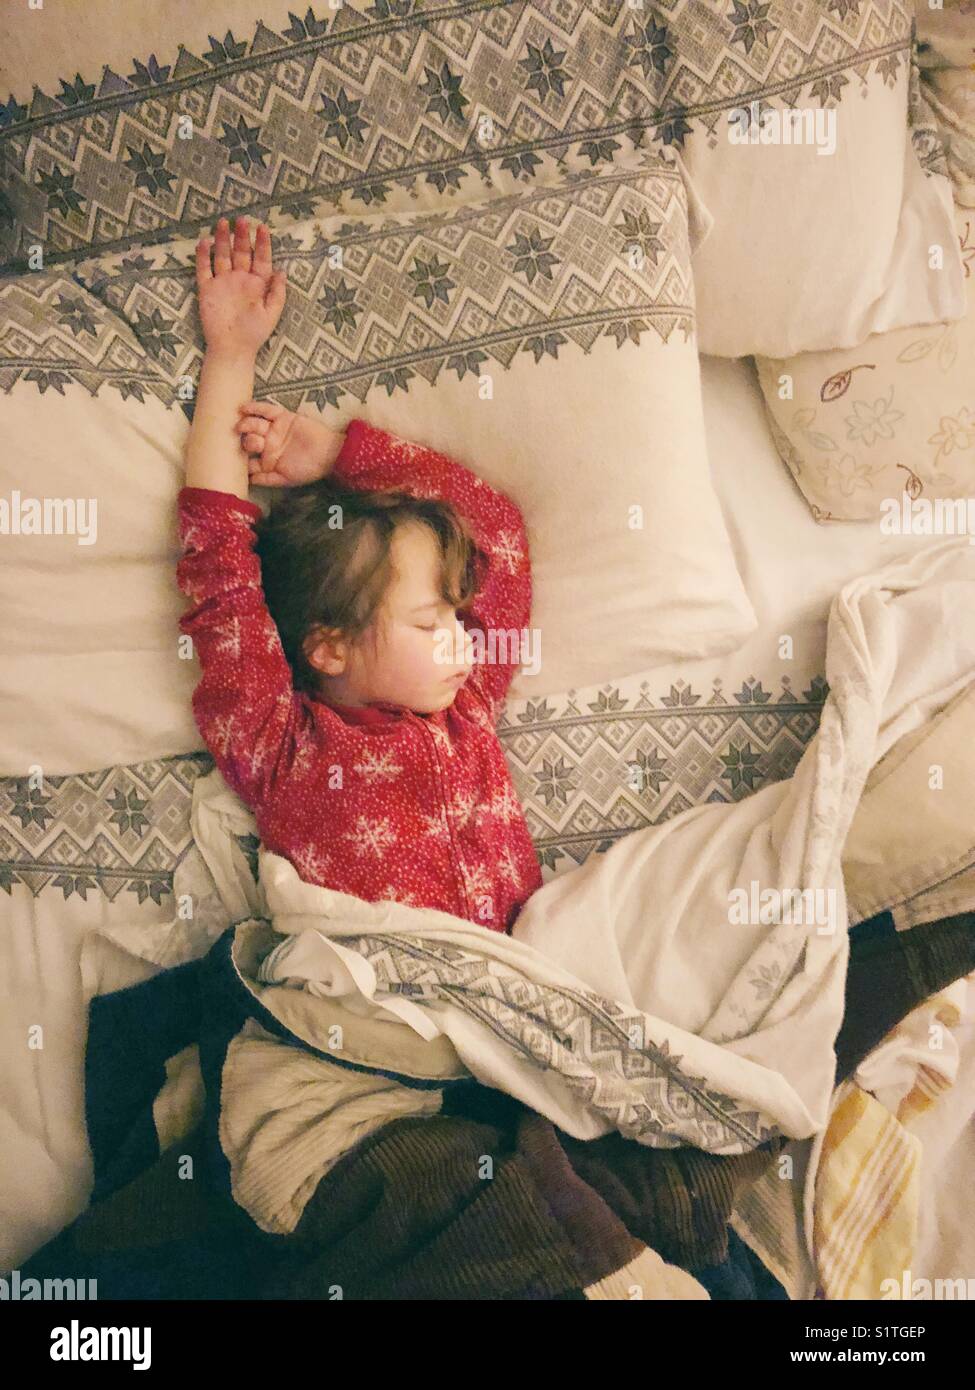 Enfant de 5 ans dormir avec les bras au-dessus de la tête dans le lit des parents Banque D'Images